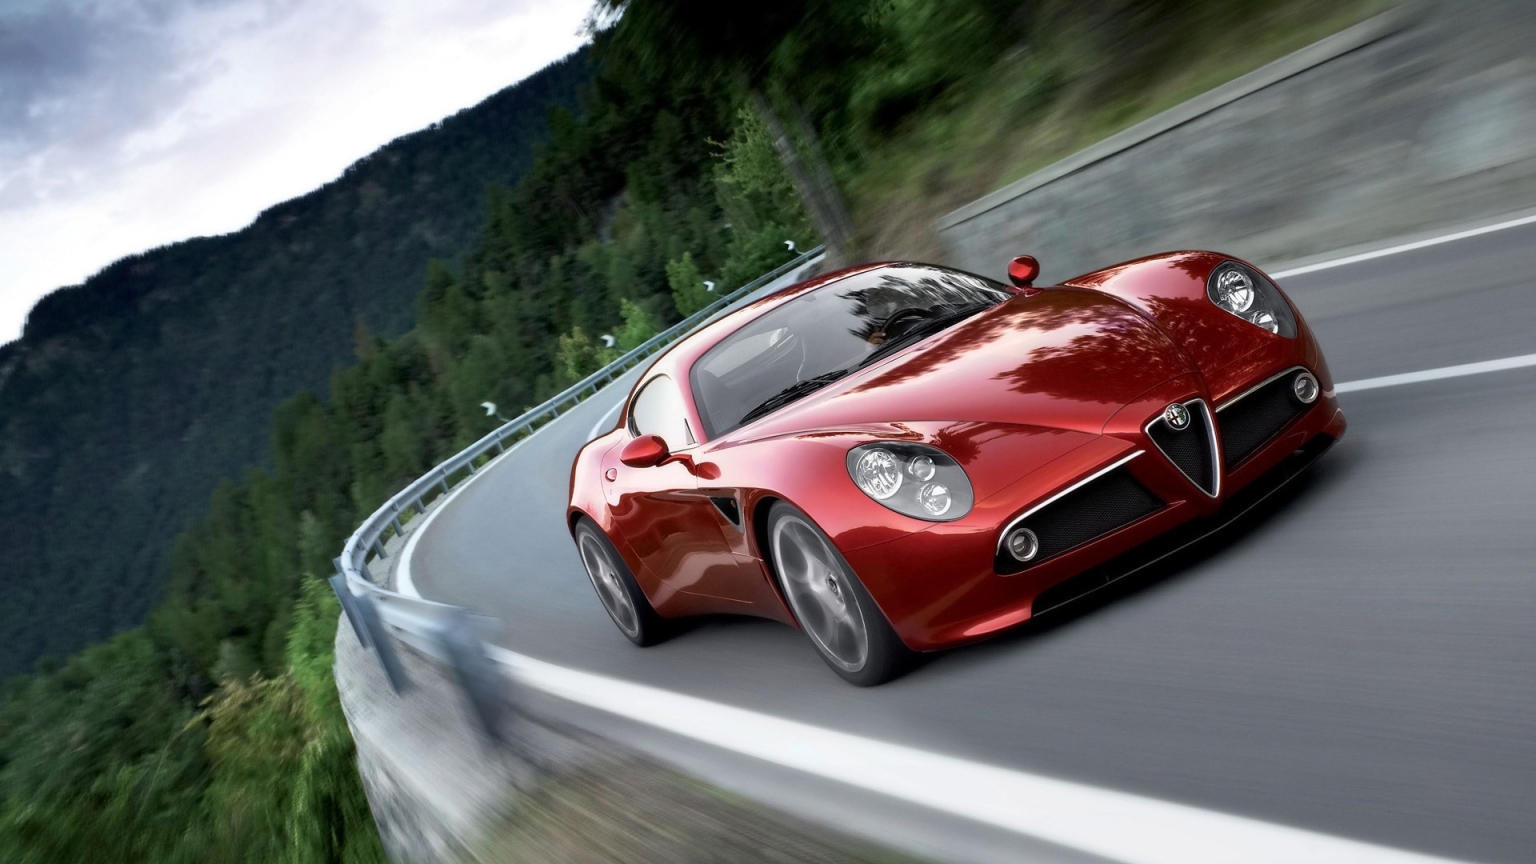 Alfa Romeo Competizione 2009 for 1536 x 864 HDTV resolution